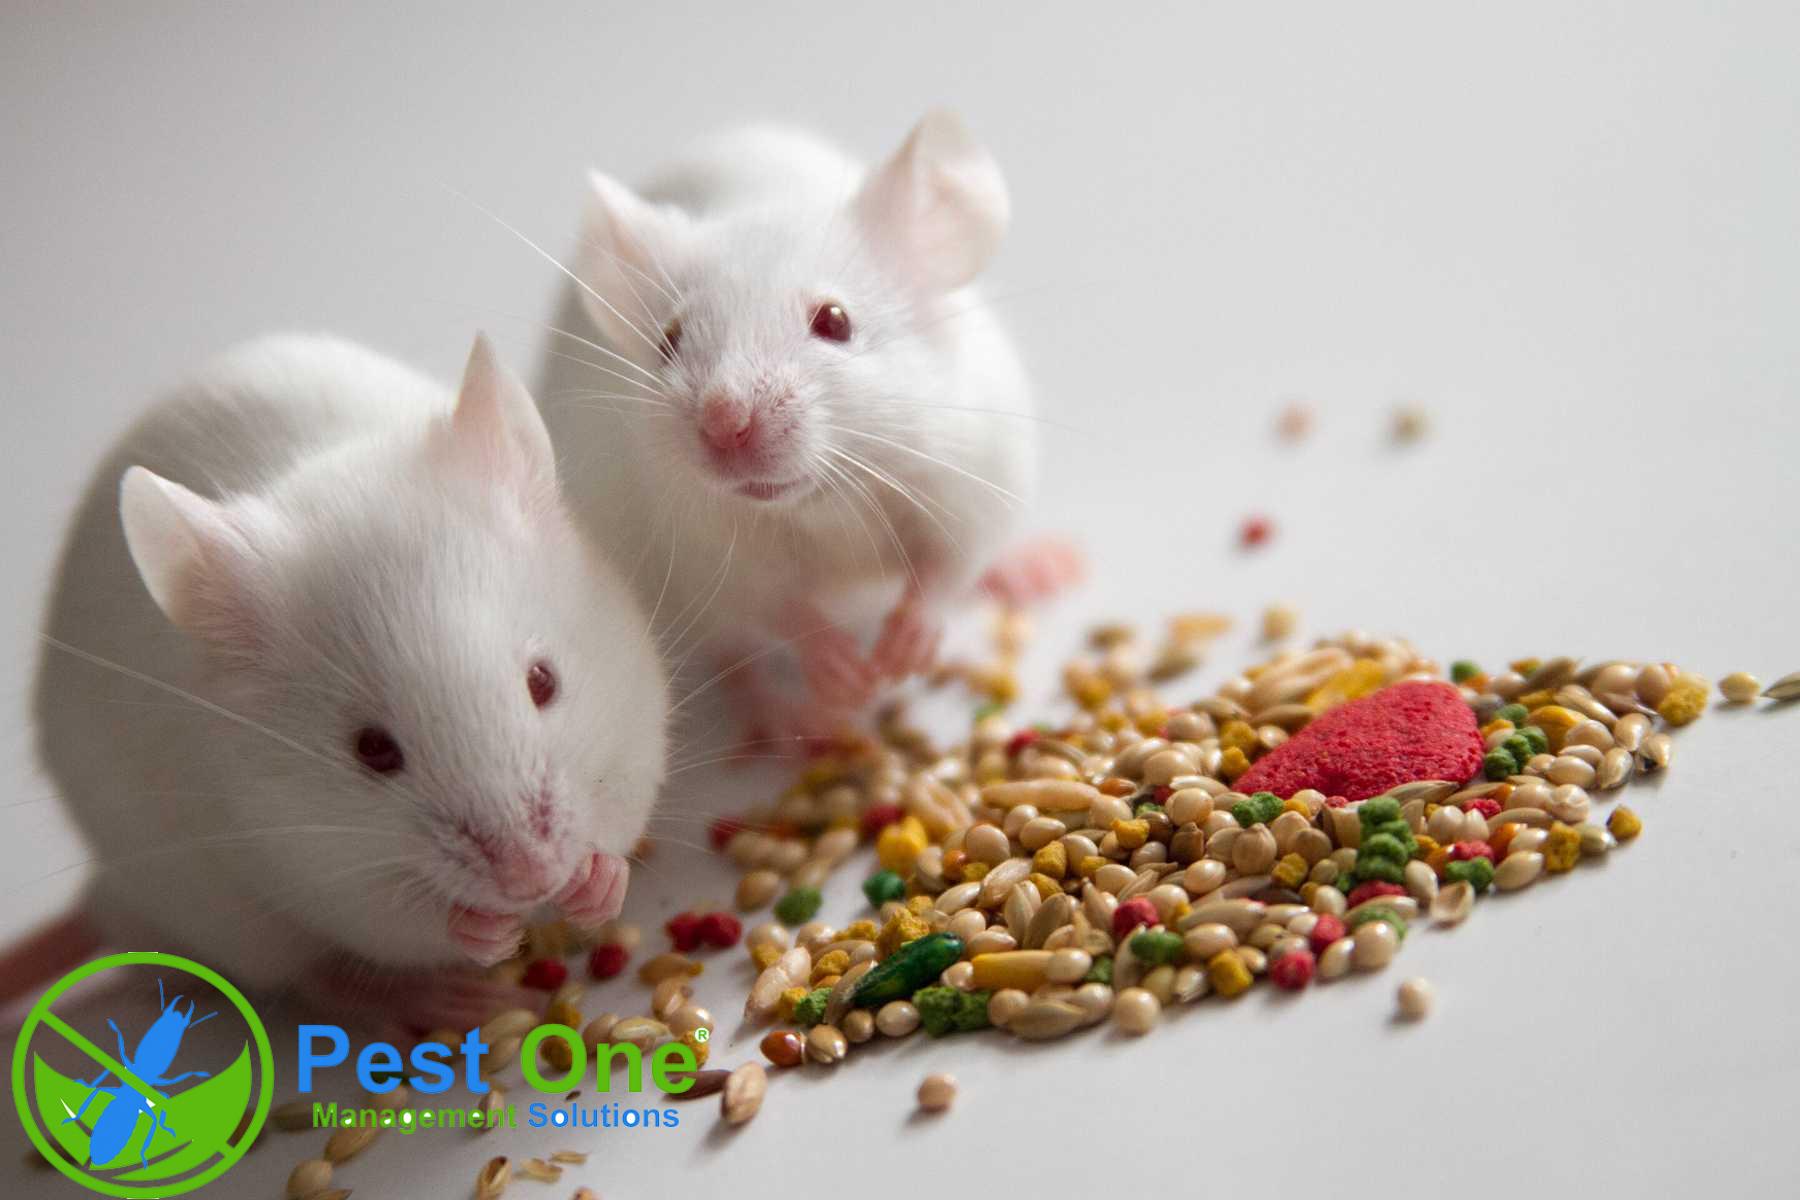 thuốc diệt chuột sinh học là gì